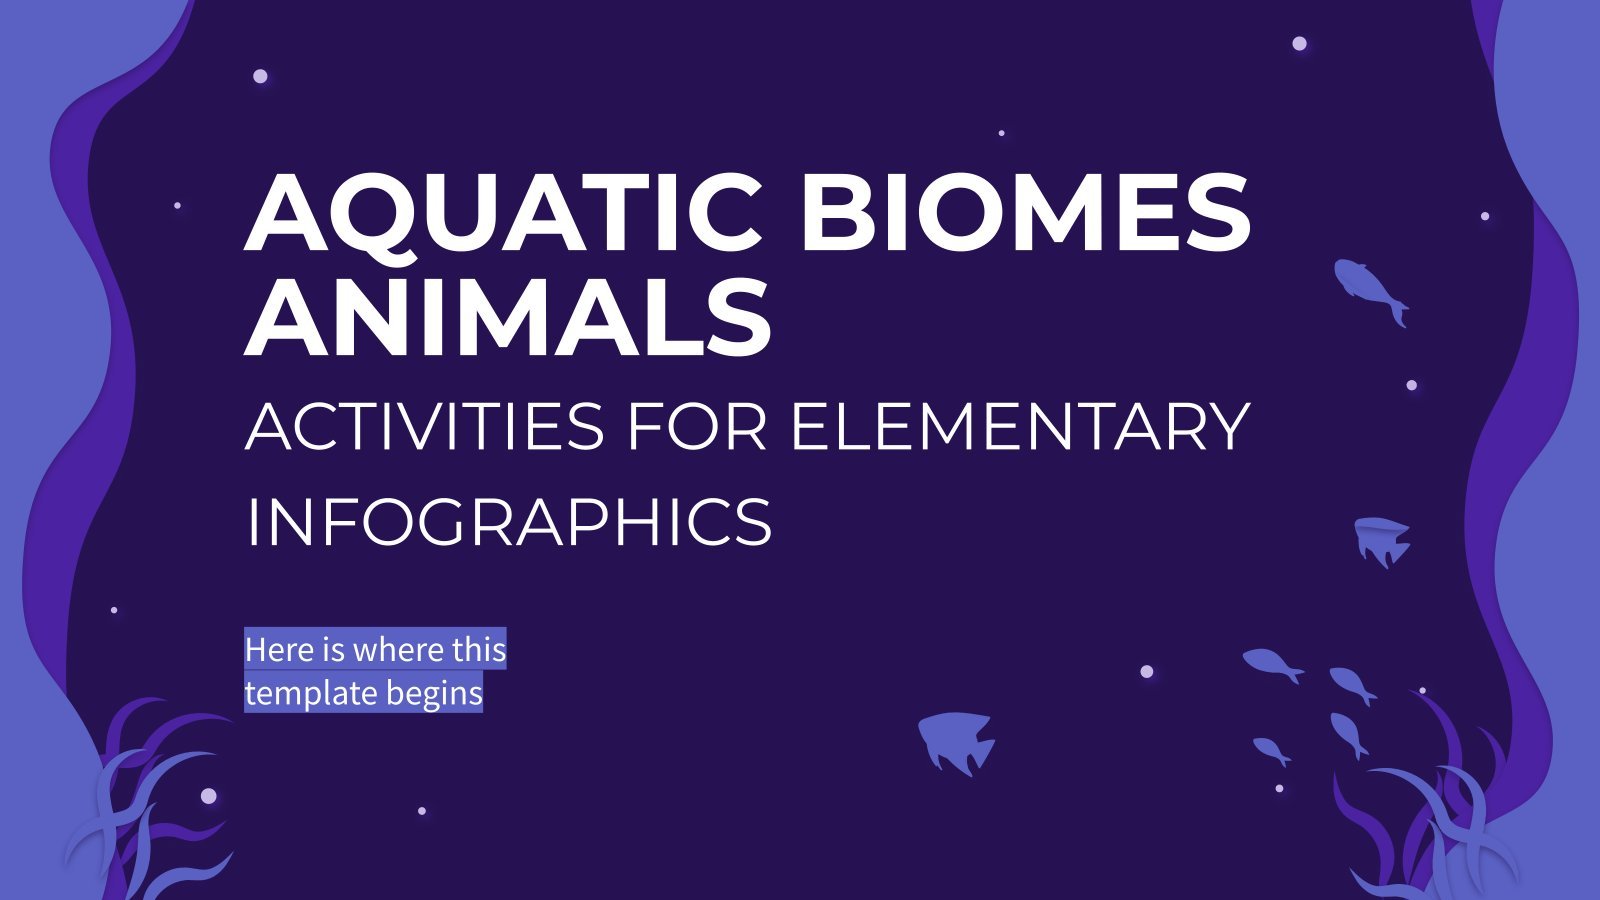 Plantilla de presentación Actividades sobre los animales de los biomas acuáticos para primaria - Infografías